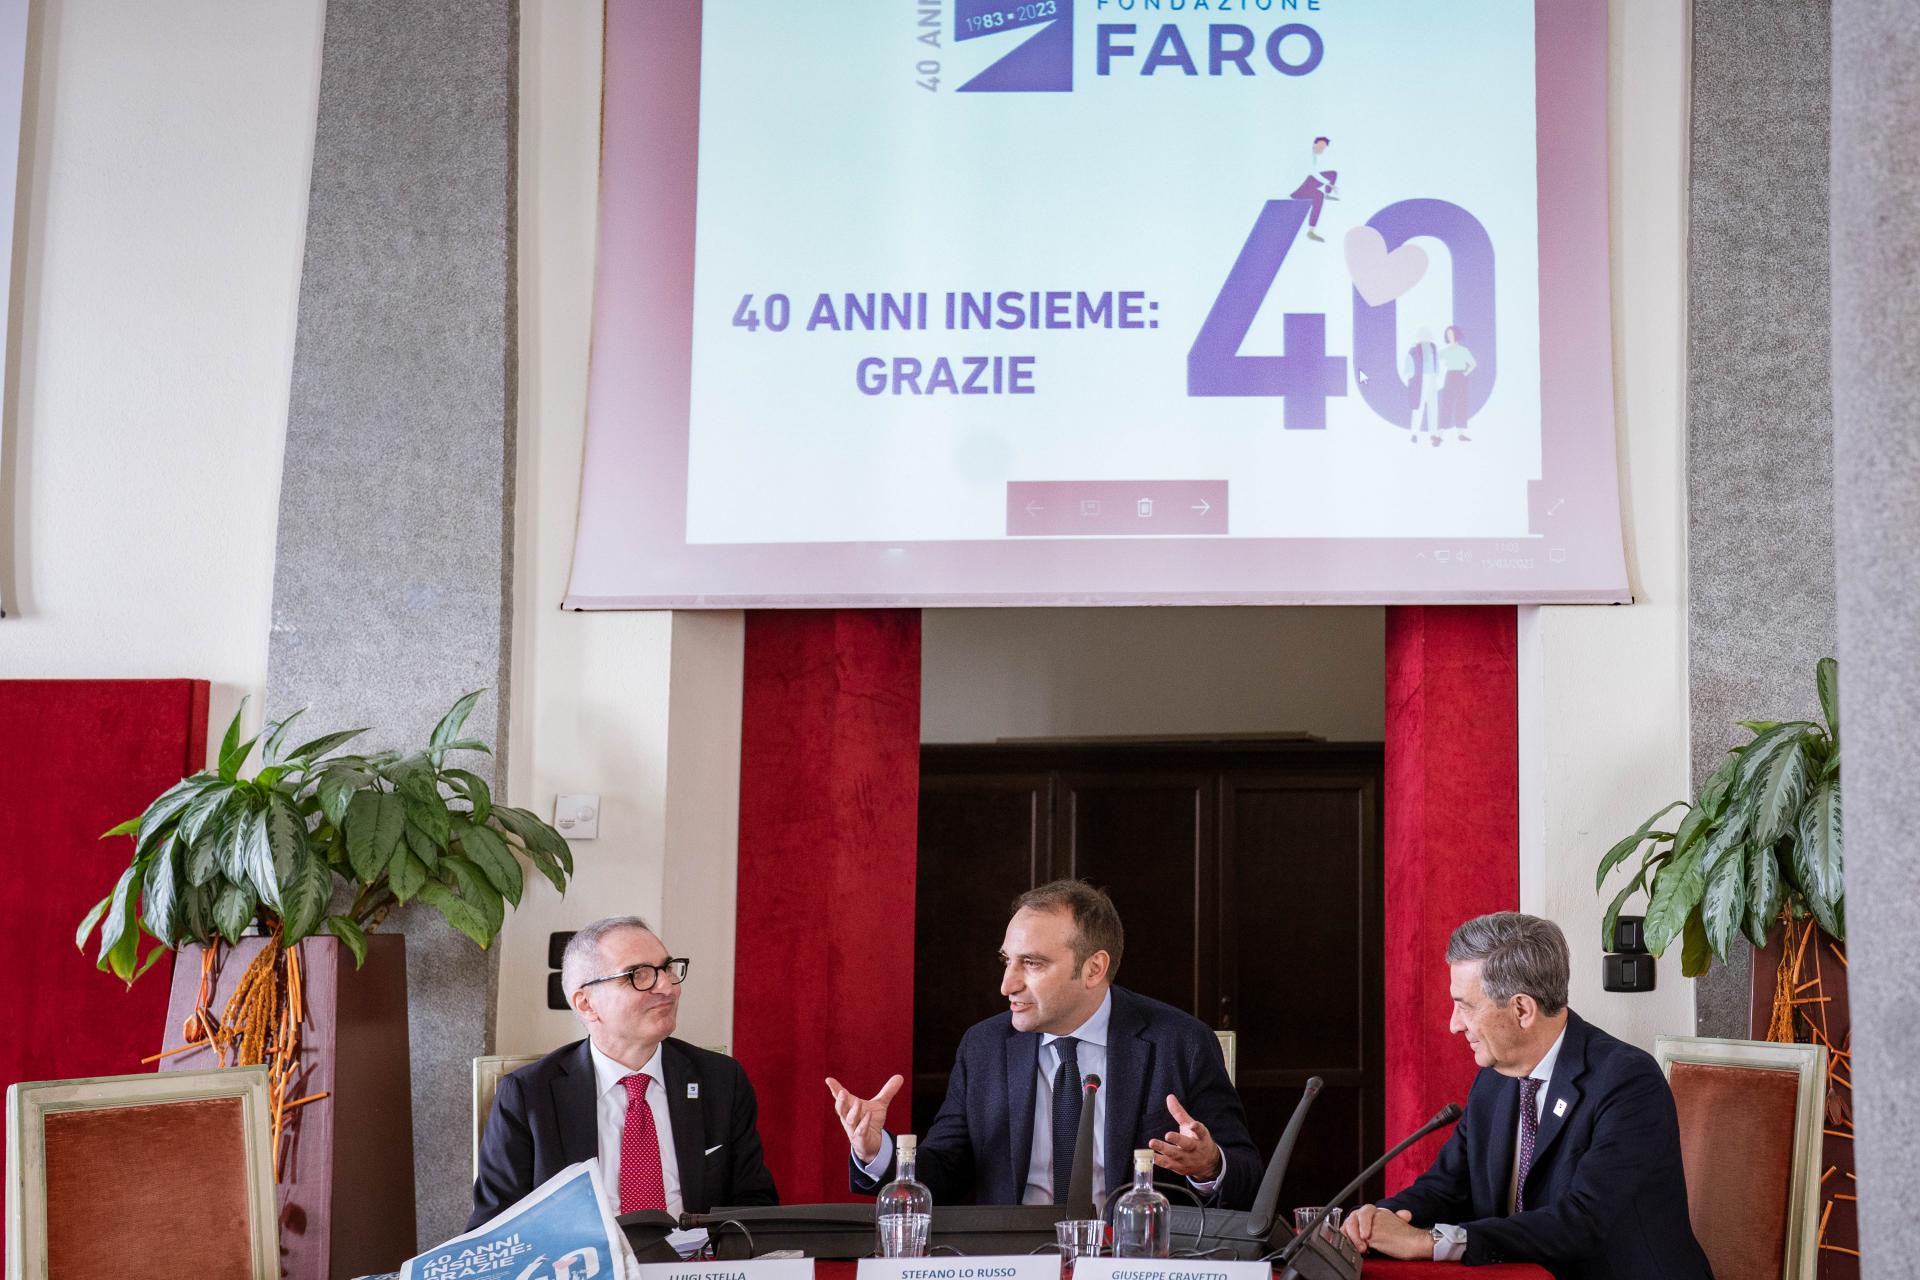 40 Anni di Fondazione FARO